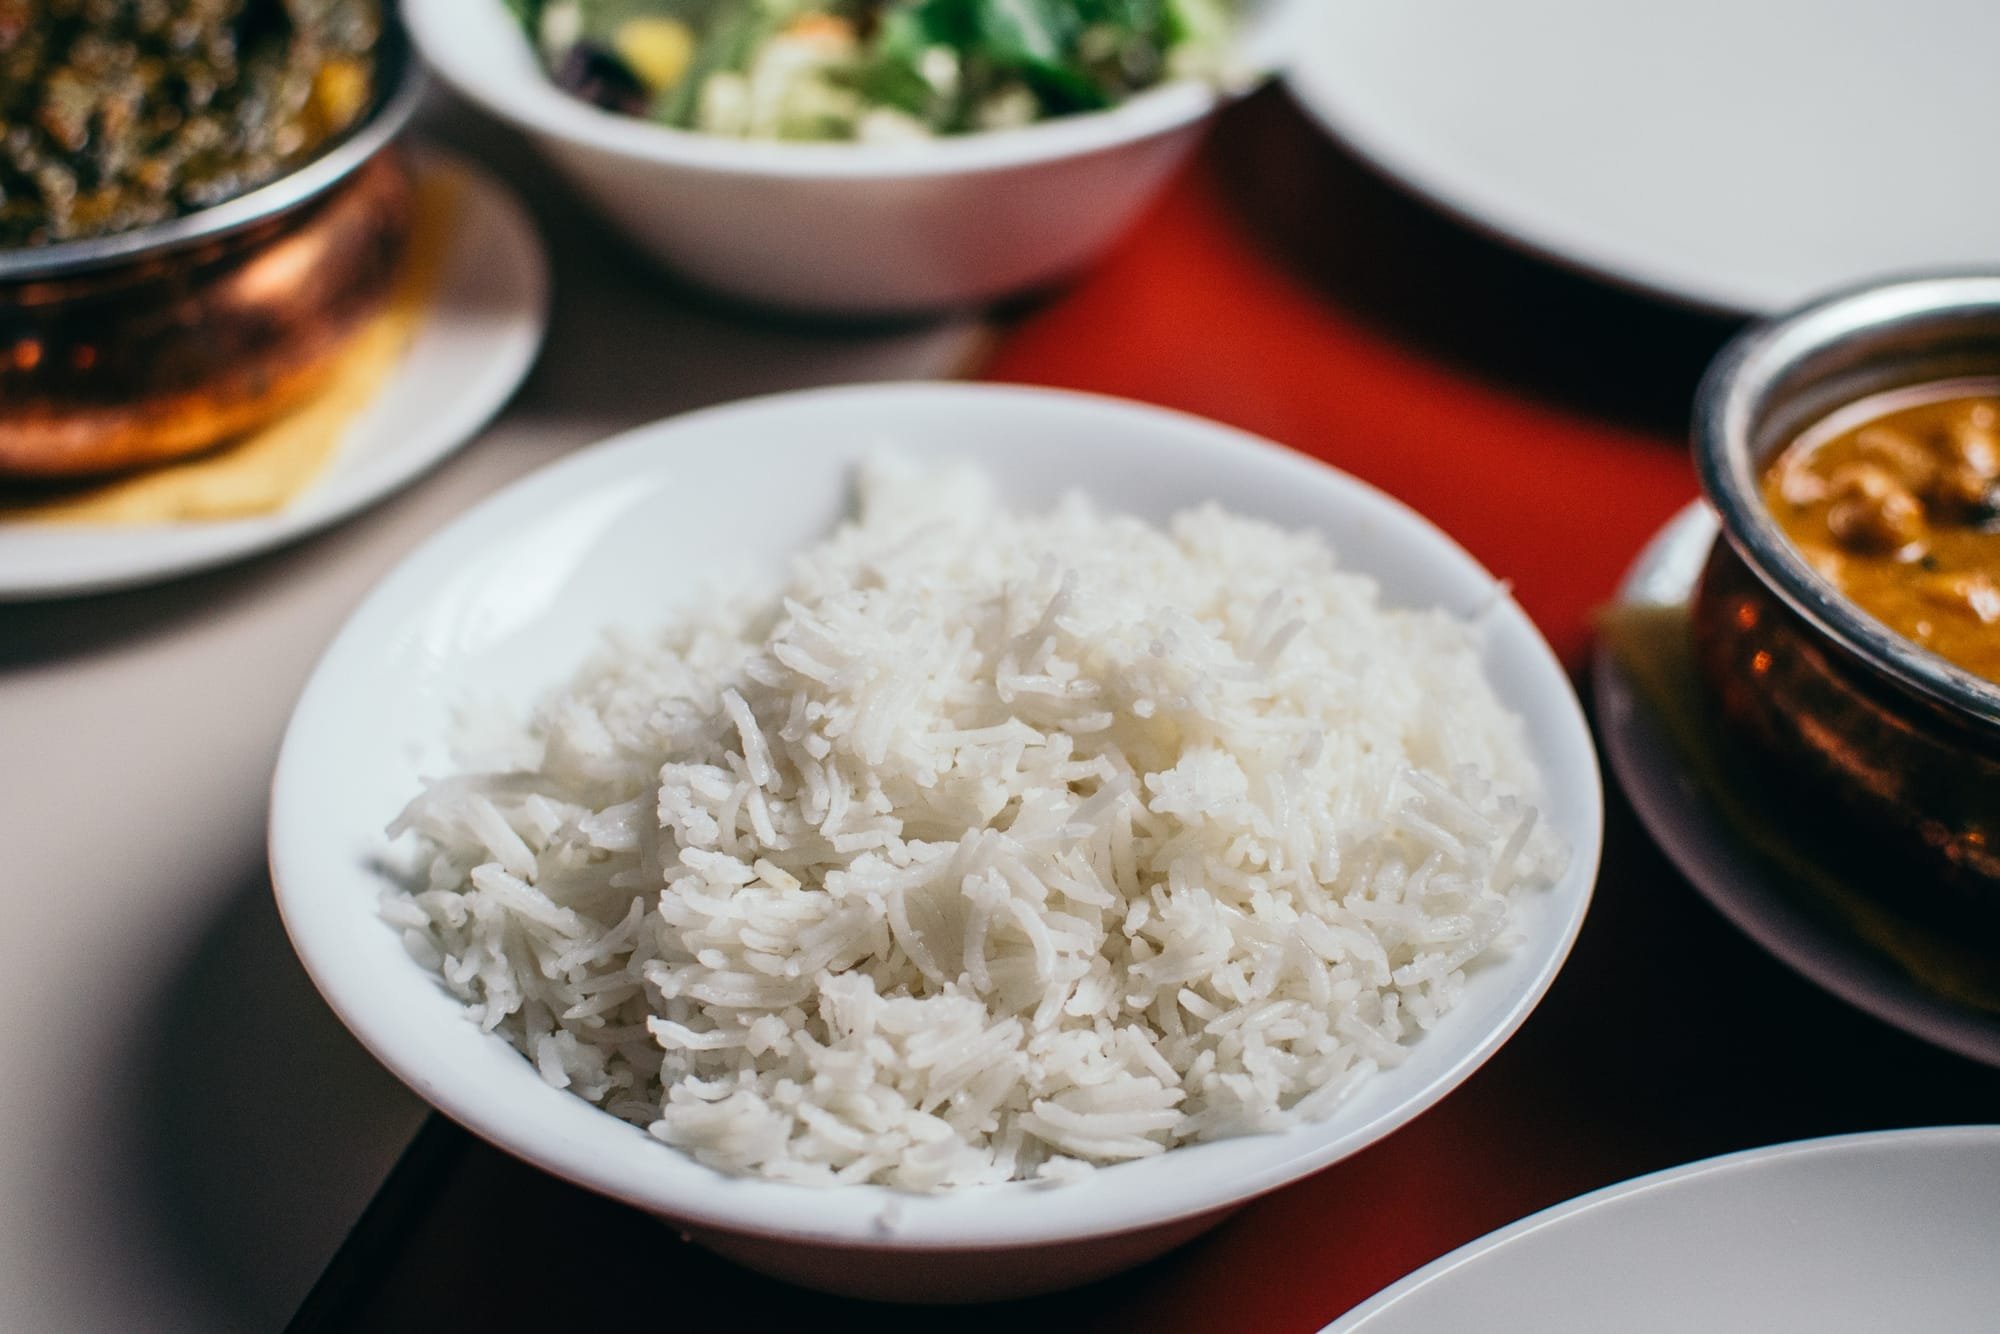 لمتبعي الدايت.. 5 بدائل صحية للأرز الأبيض